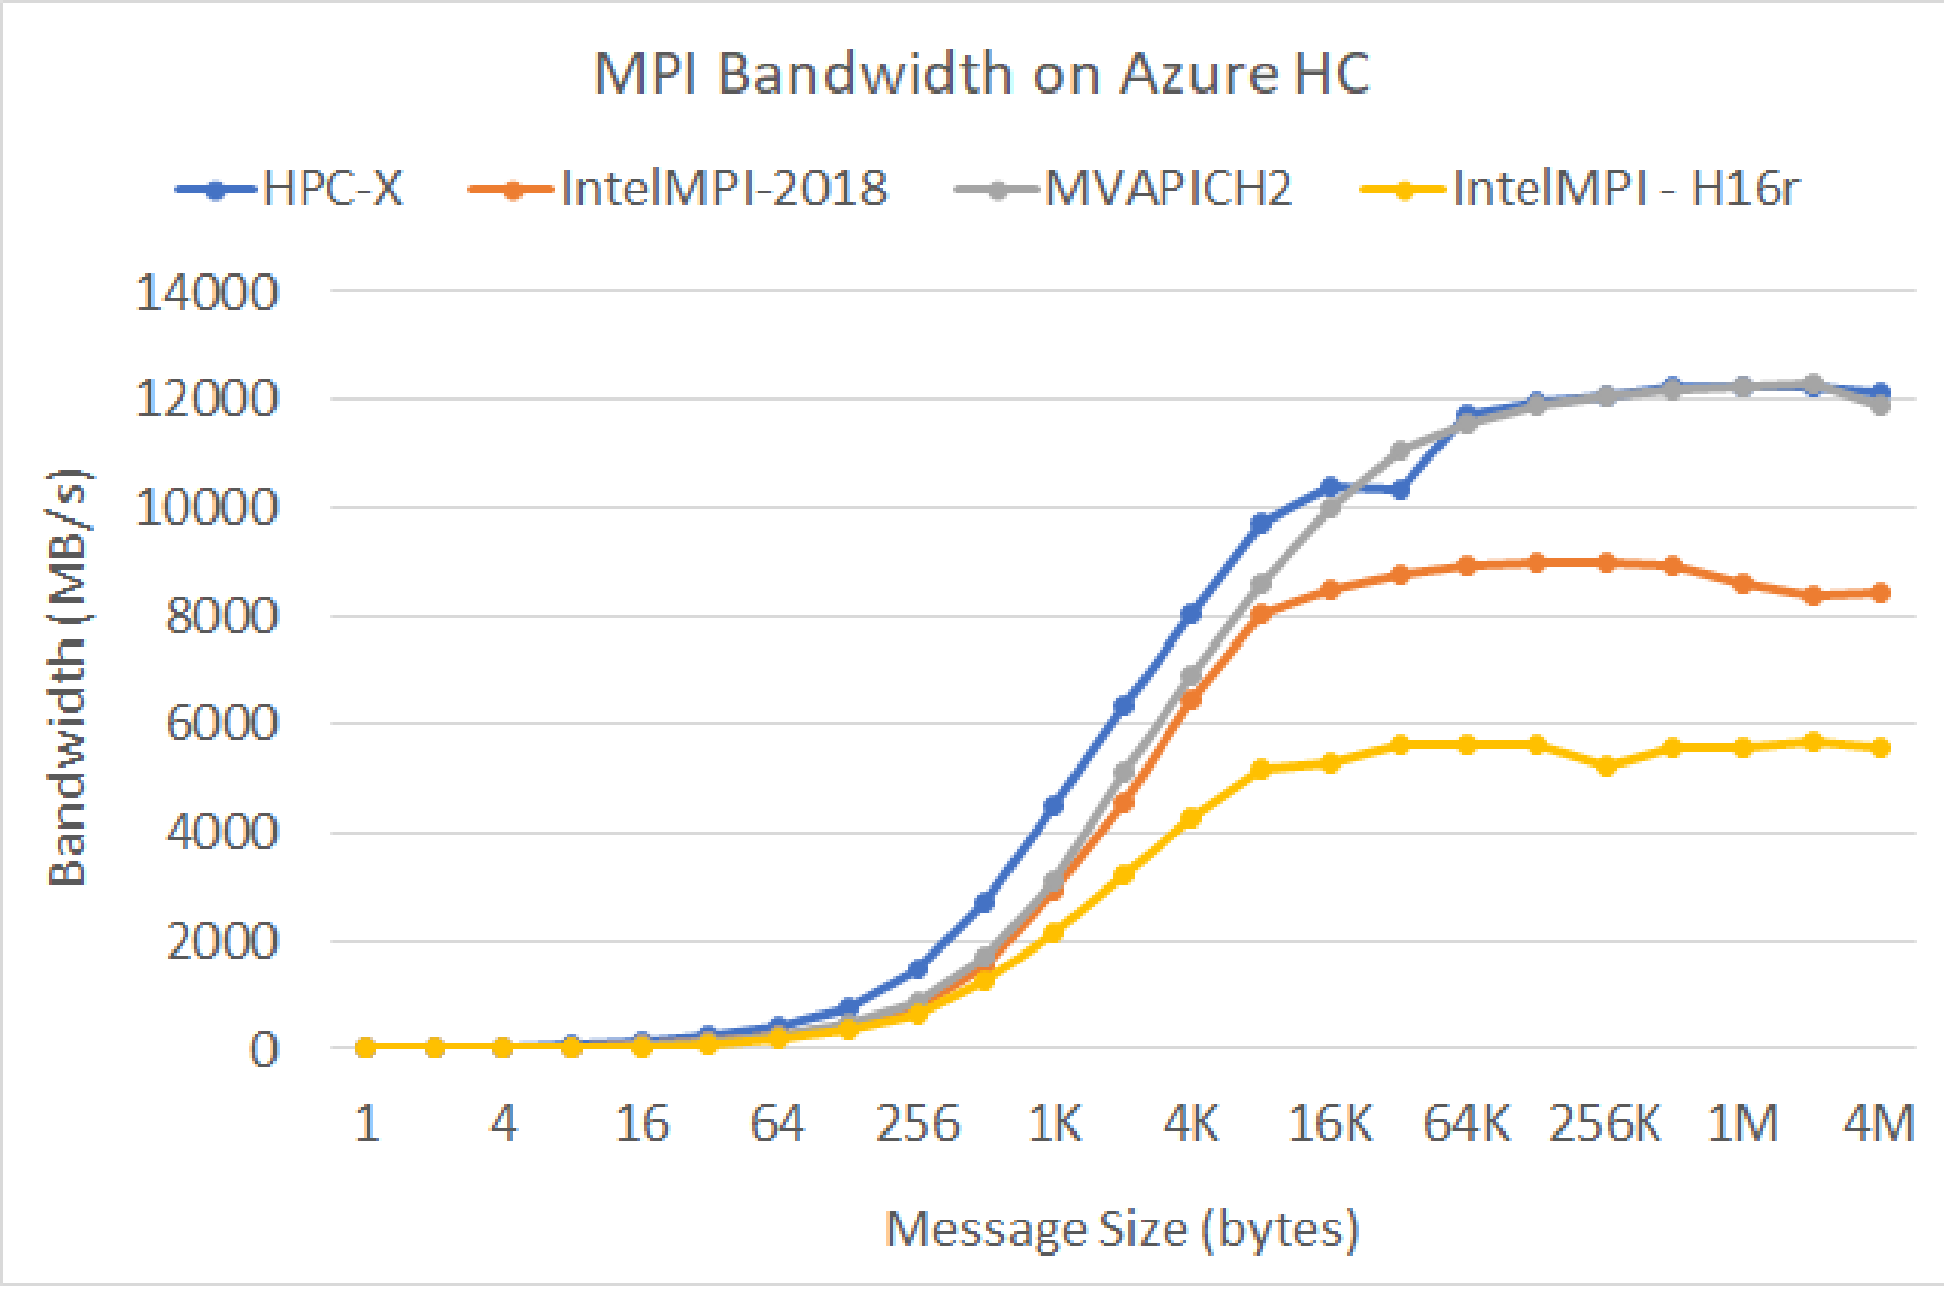 MPI bandwidth on Azure HC.